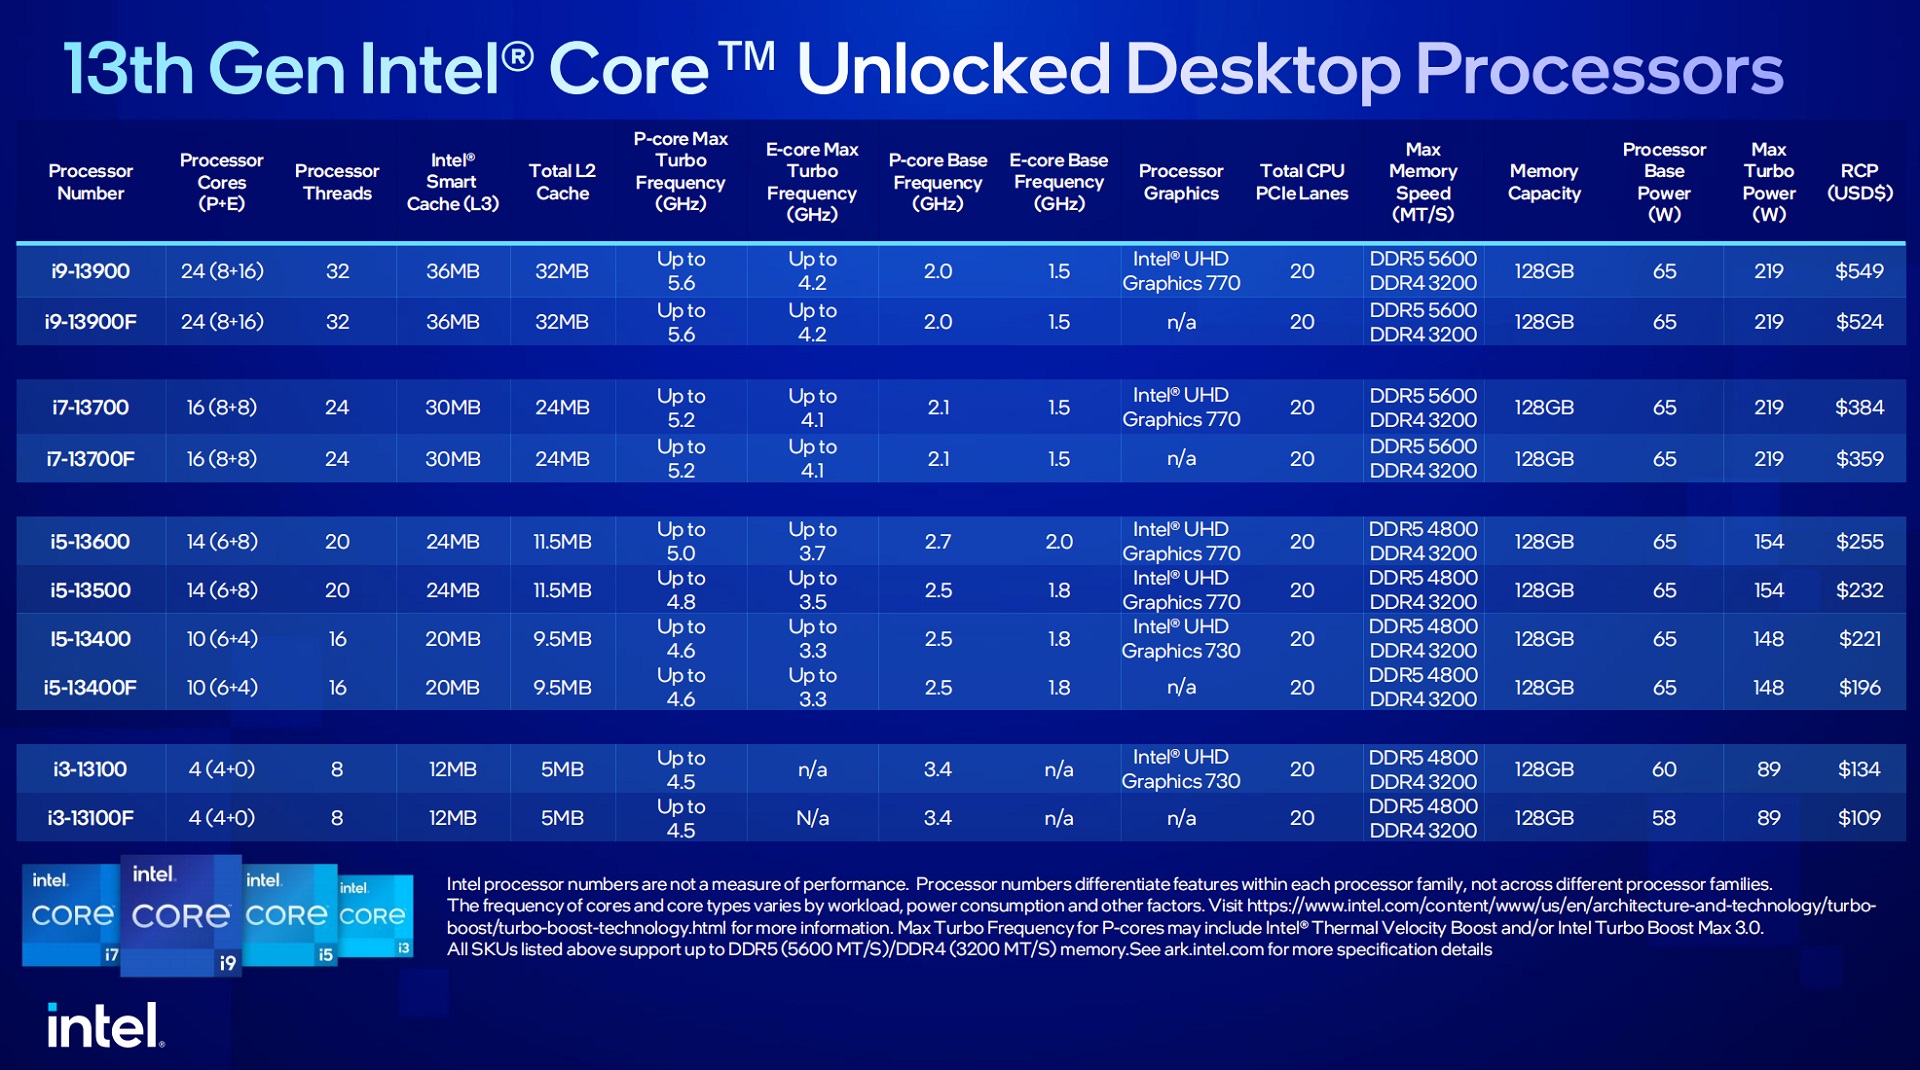 Test Intel Core i3-13100F – 20% droższy, ale o ile szybszy?